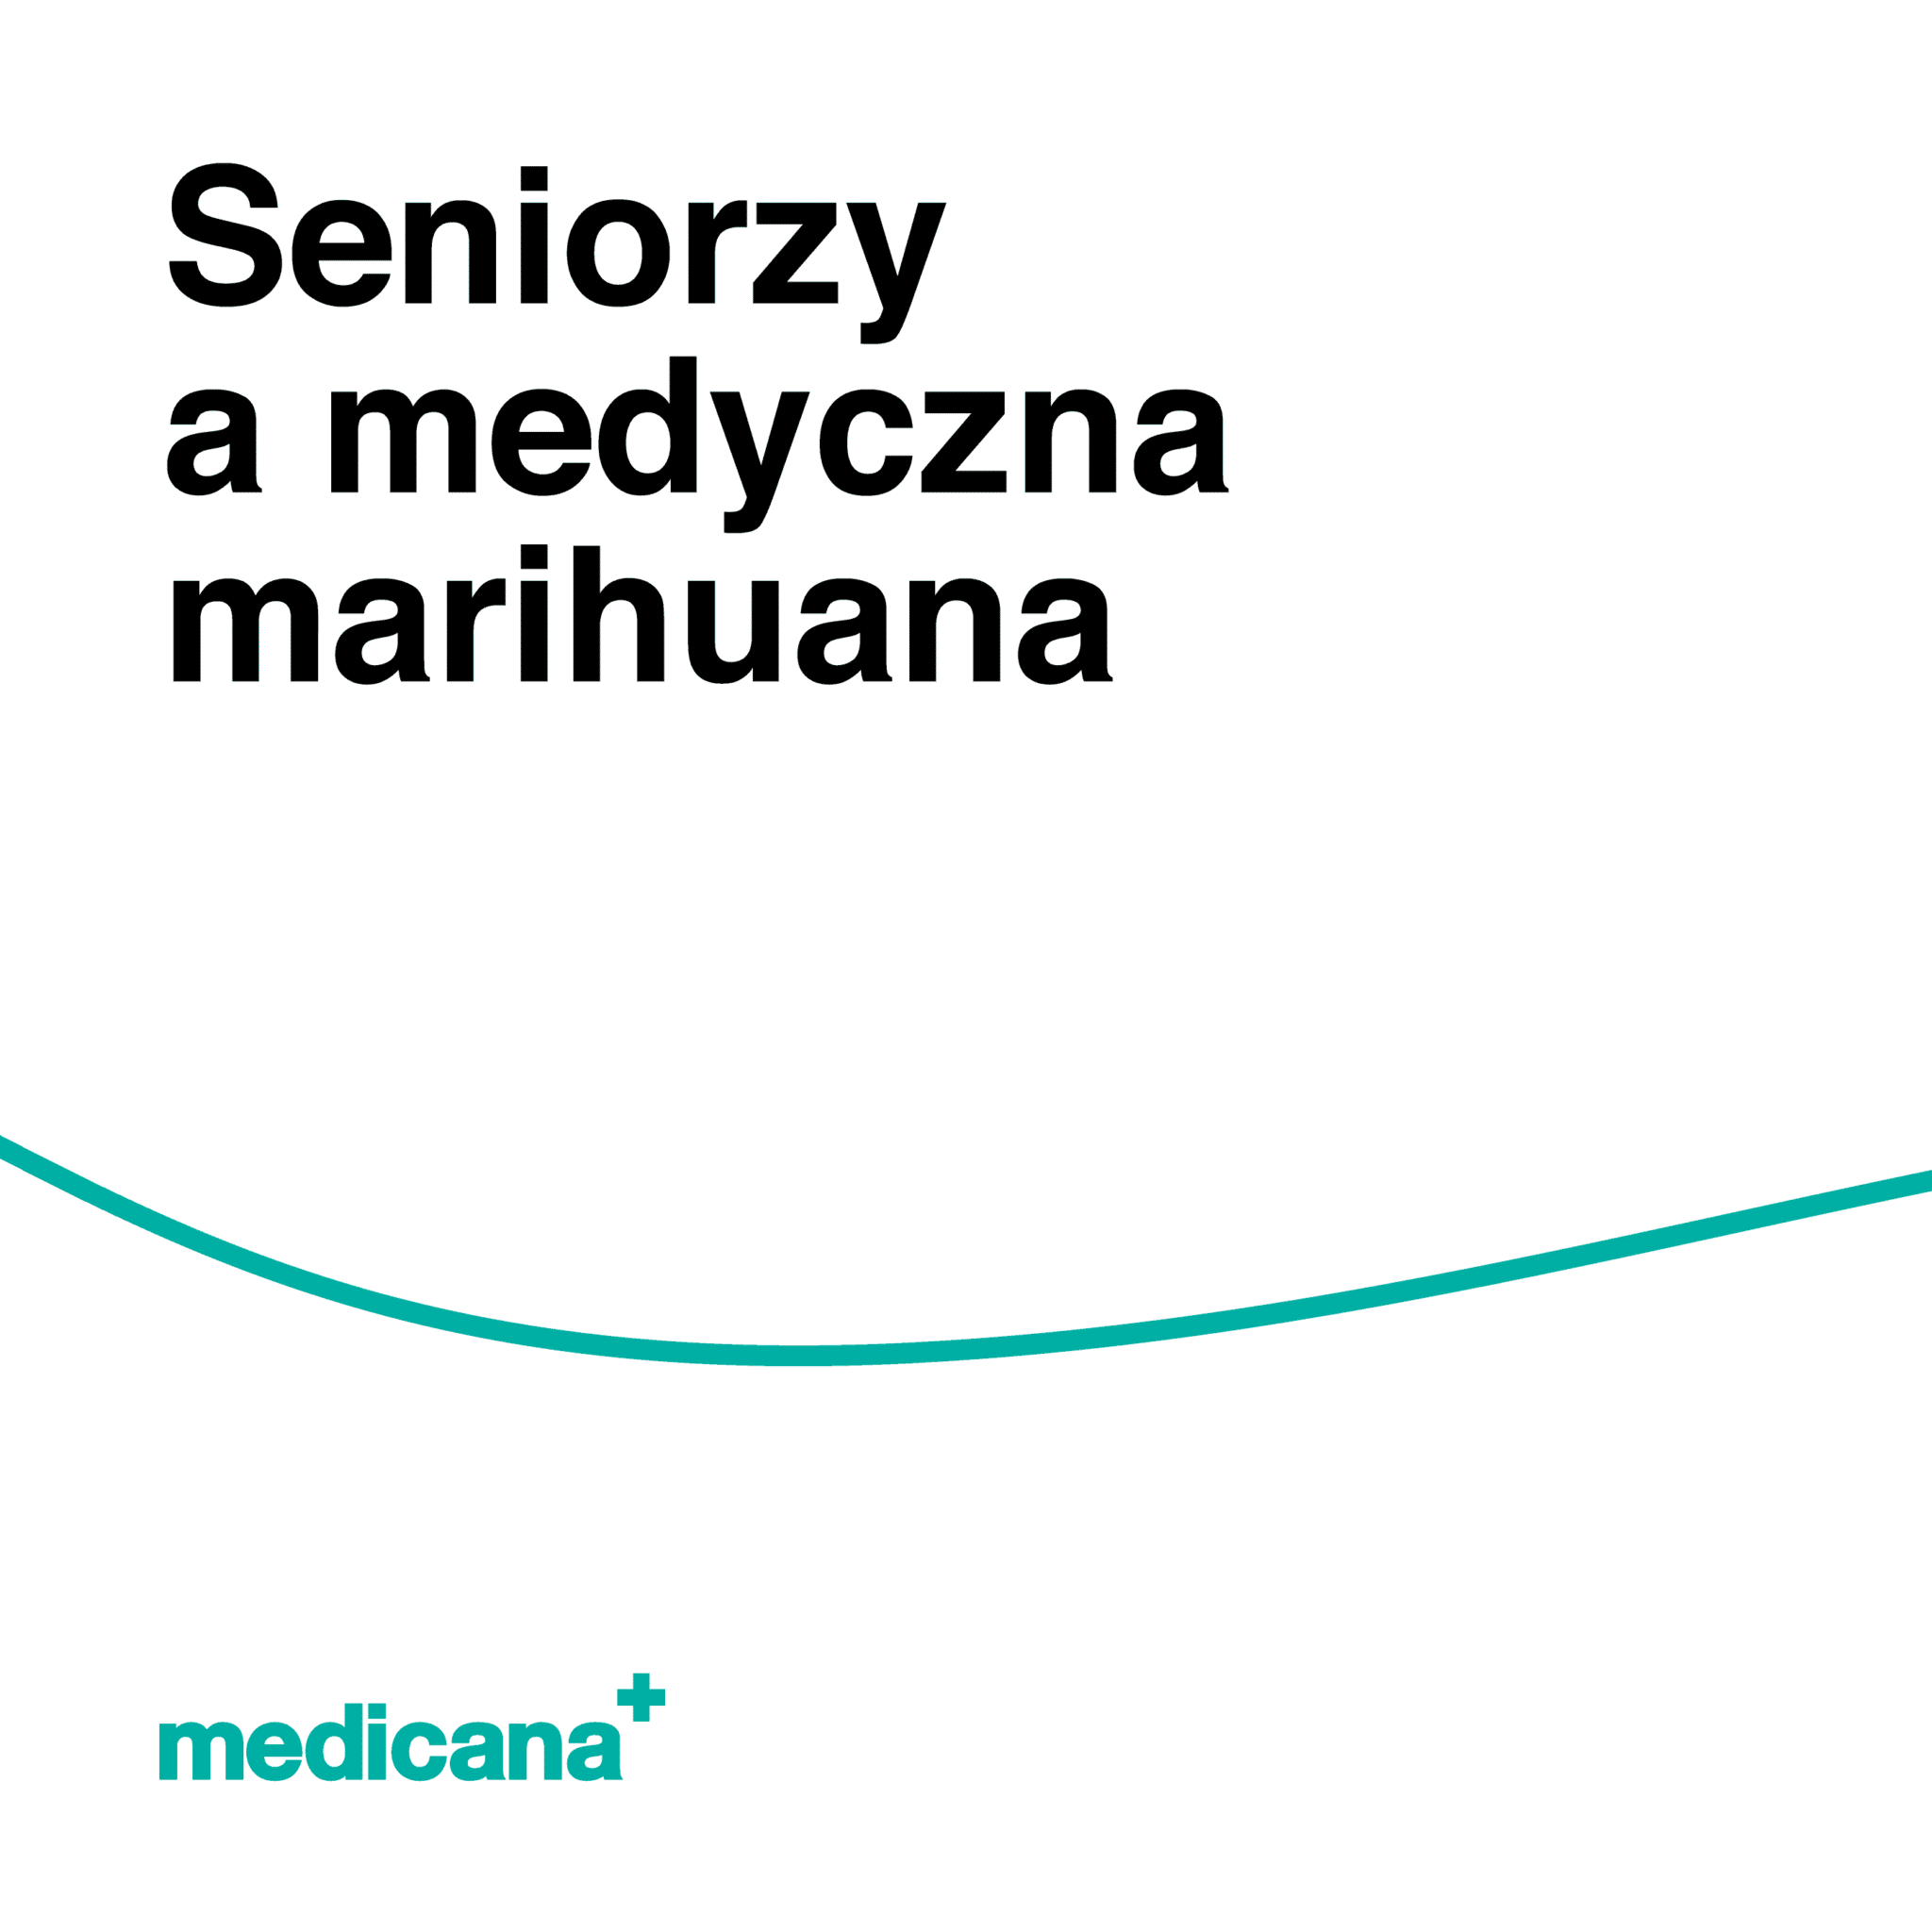 Grafika, białe tło z zieloną linią, czarnym napisem Seniorzy a medyczna marihuana i logo Medicana Centrum Terapii Medyczna Marihuana w lewym dolnym rogu.